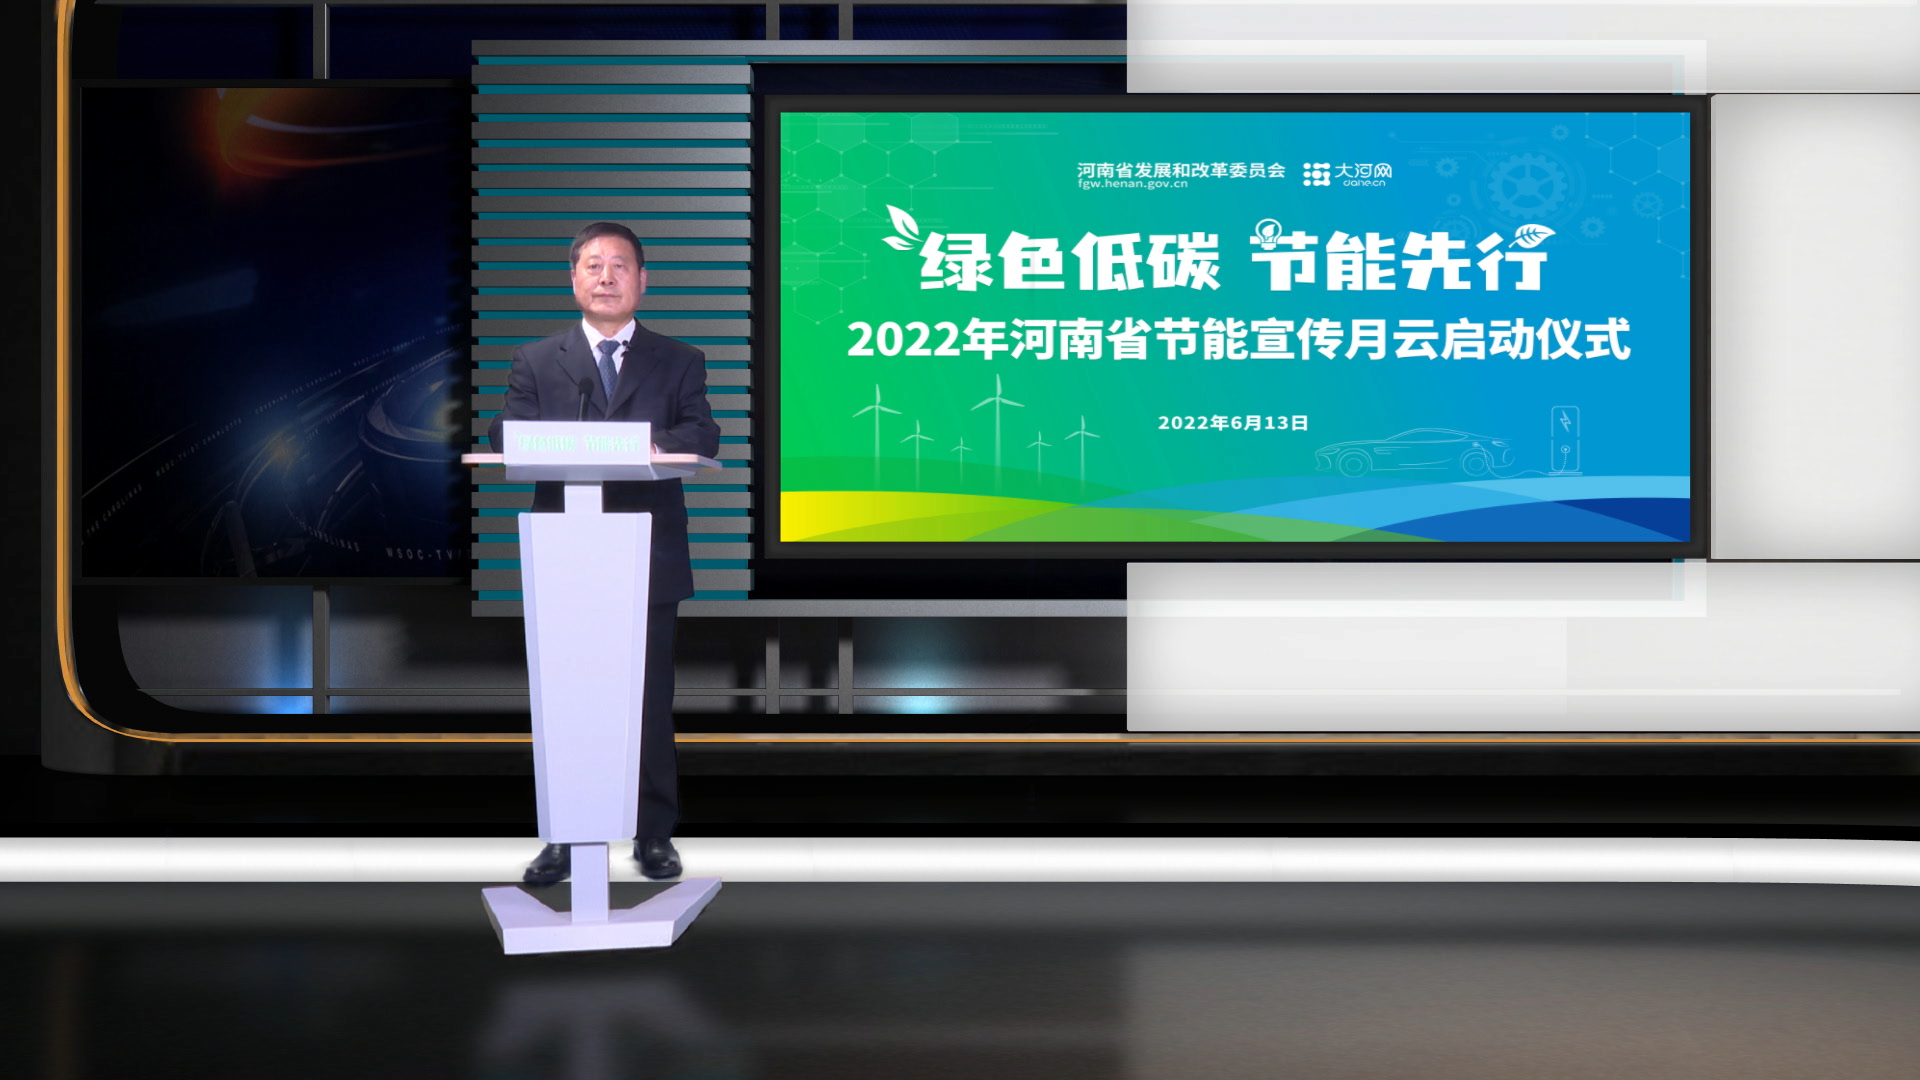 绿色低碳 节能先行 2022年河南省节能宣传月活动正式启动